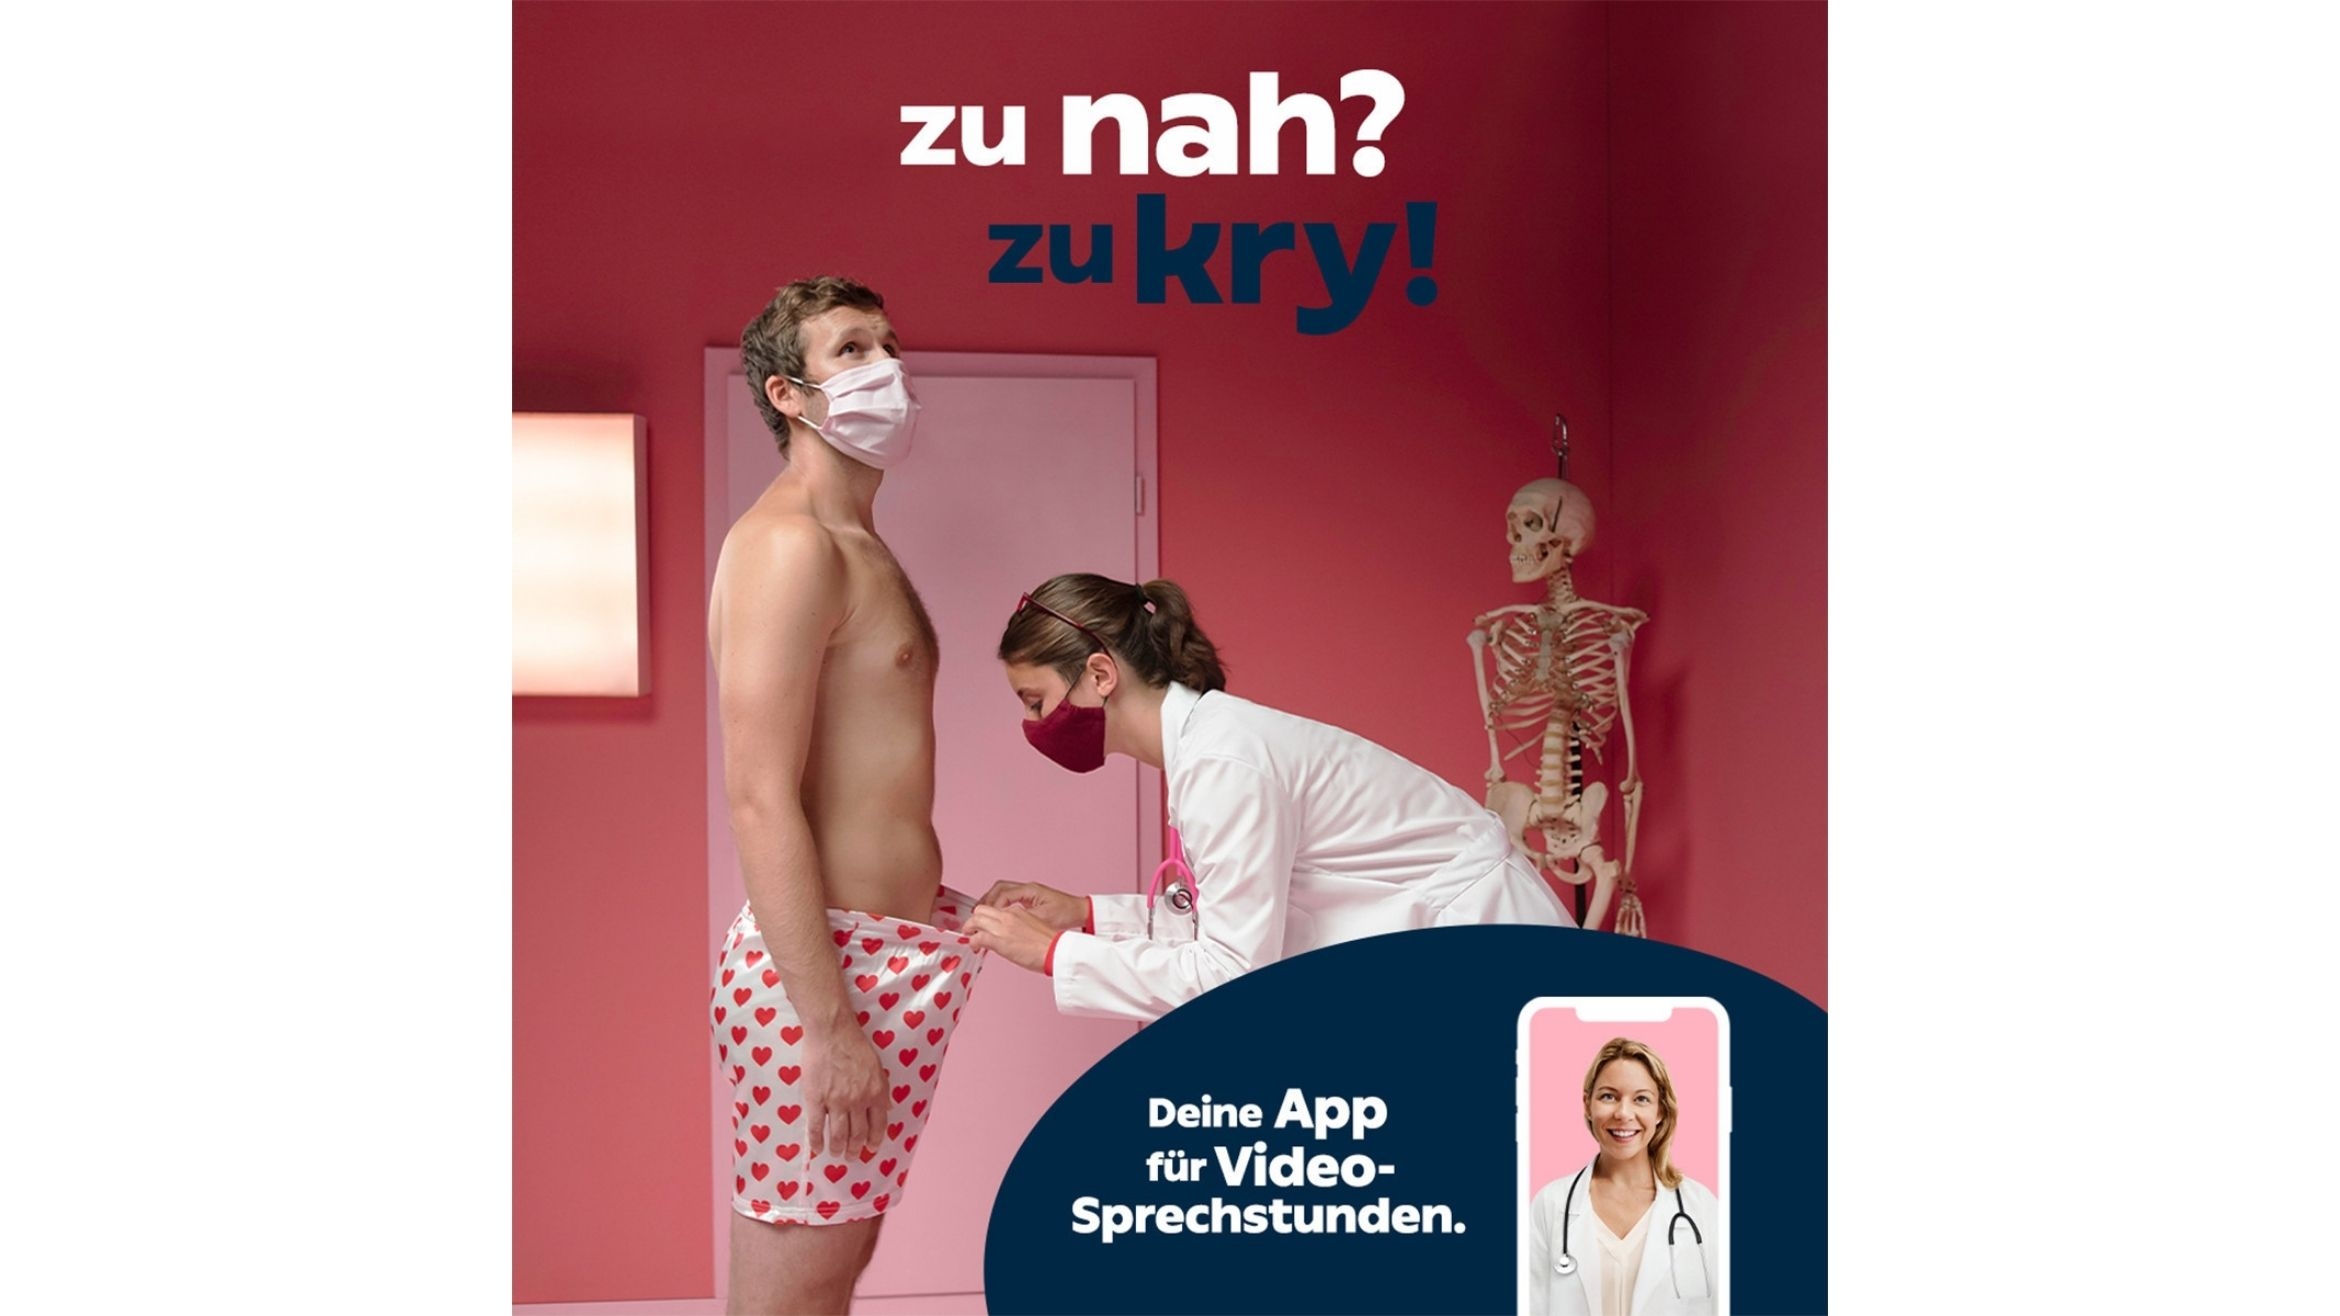 Kry startet Lauchkampagne in Deutschland, auch mit TV-Spots - 